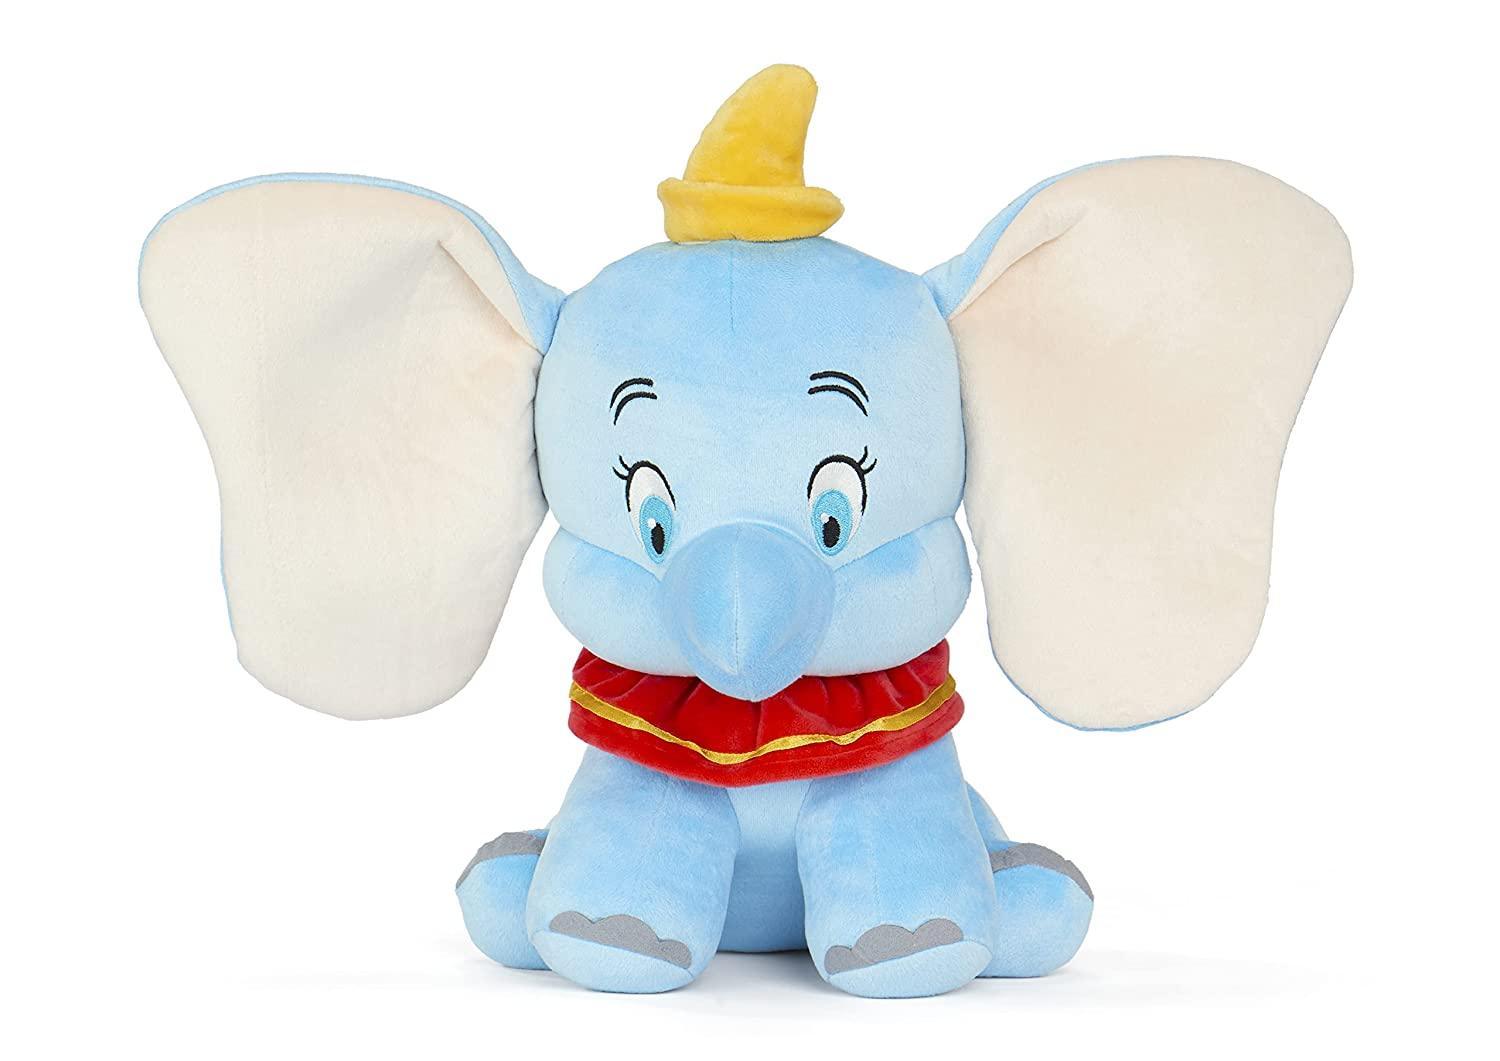 Dumbo Elephant Soft Toys for Kids